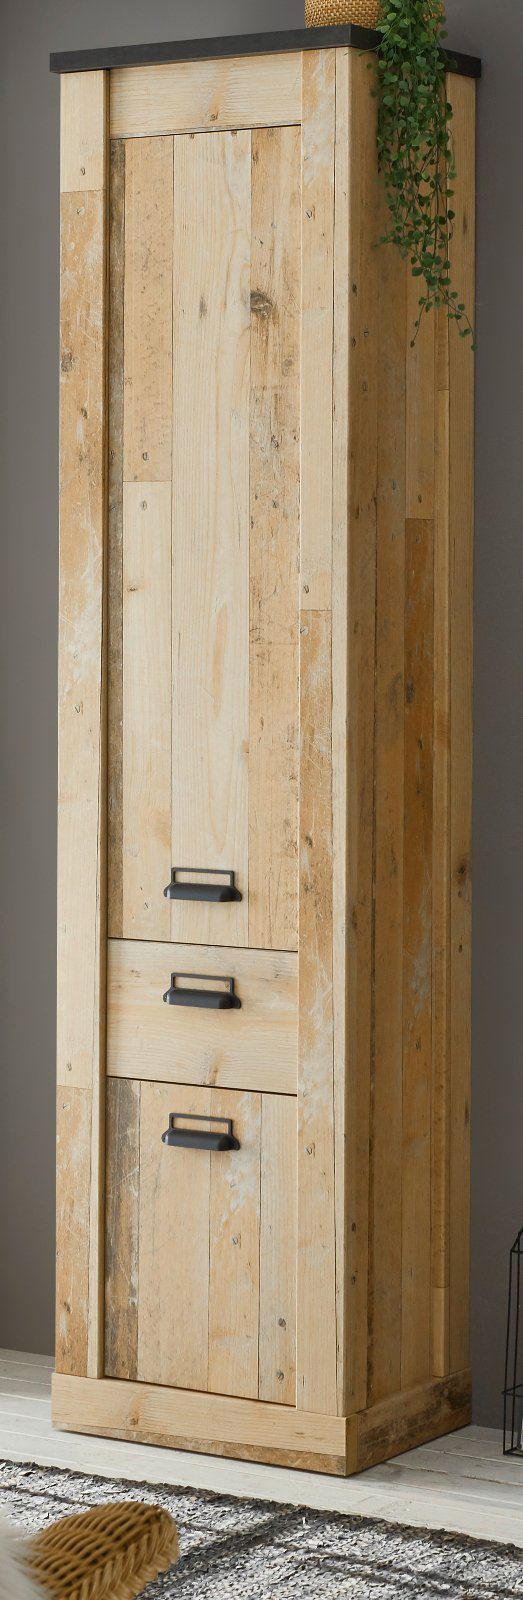 IMV Schuhschrank Stove (Hochschrank in Used Wood Vintage, 51 x 201 cm) Mit Soft-Close-Funktion